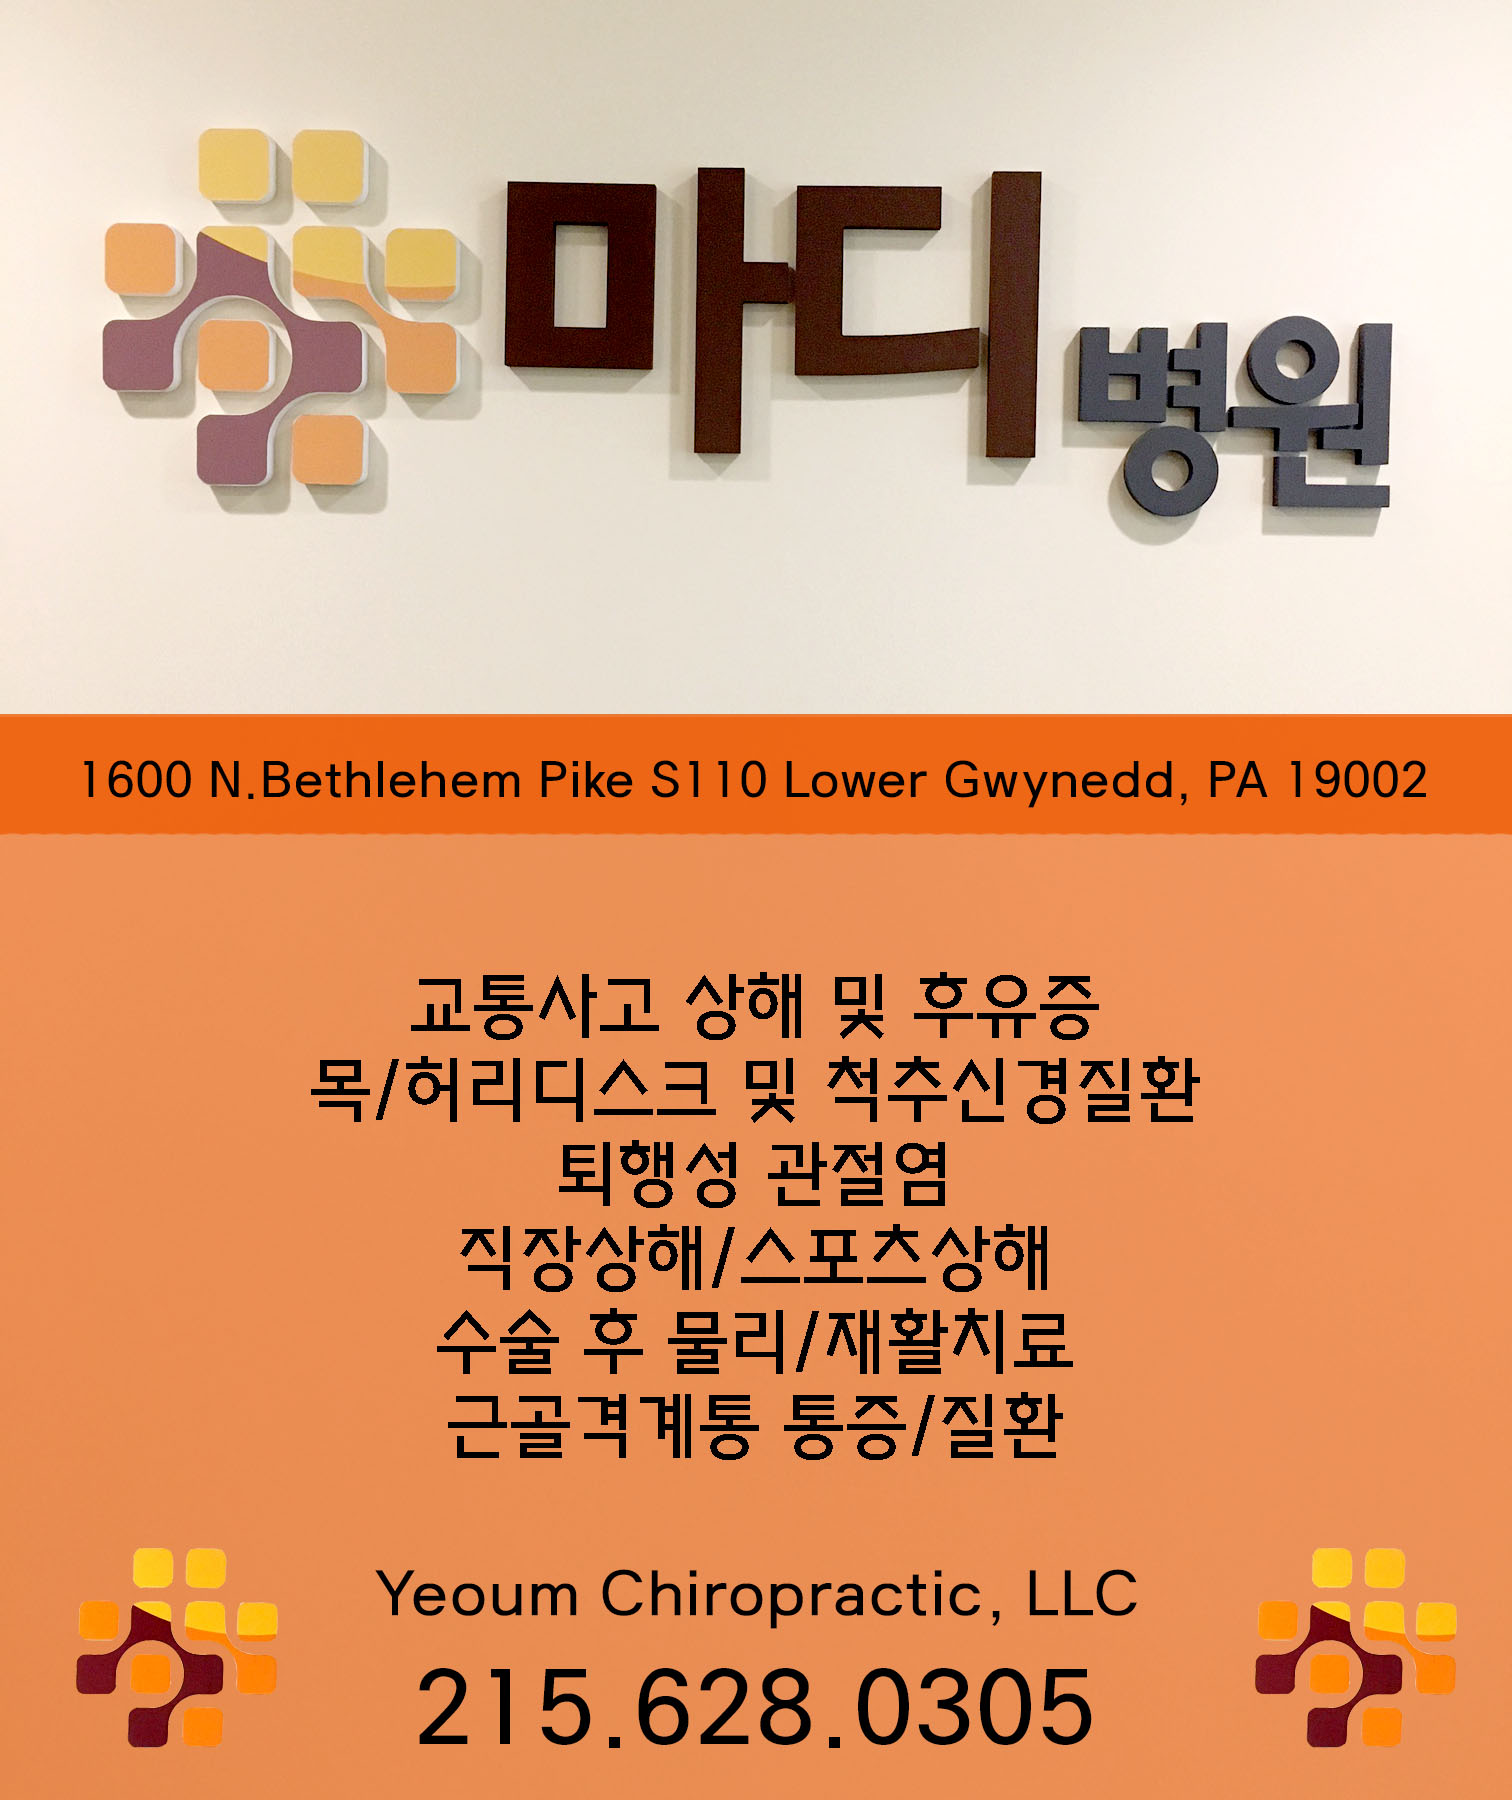 Yeoum chiropractic